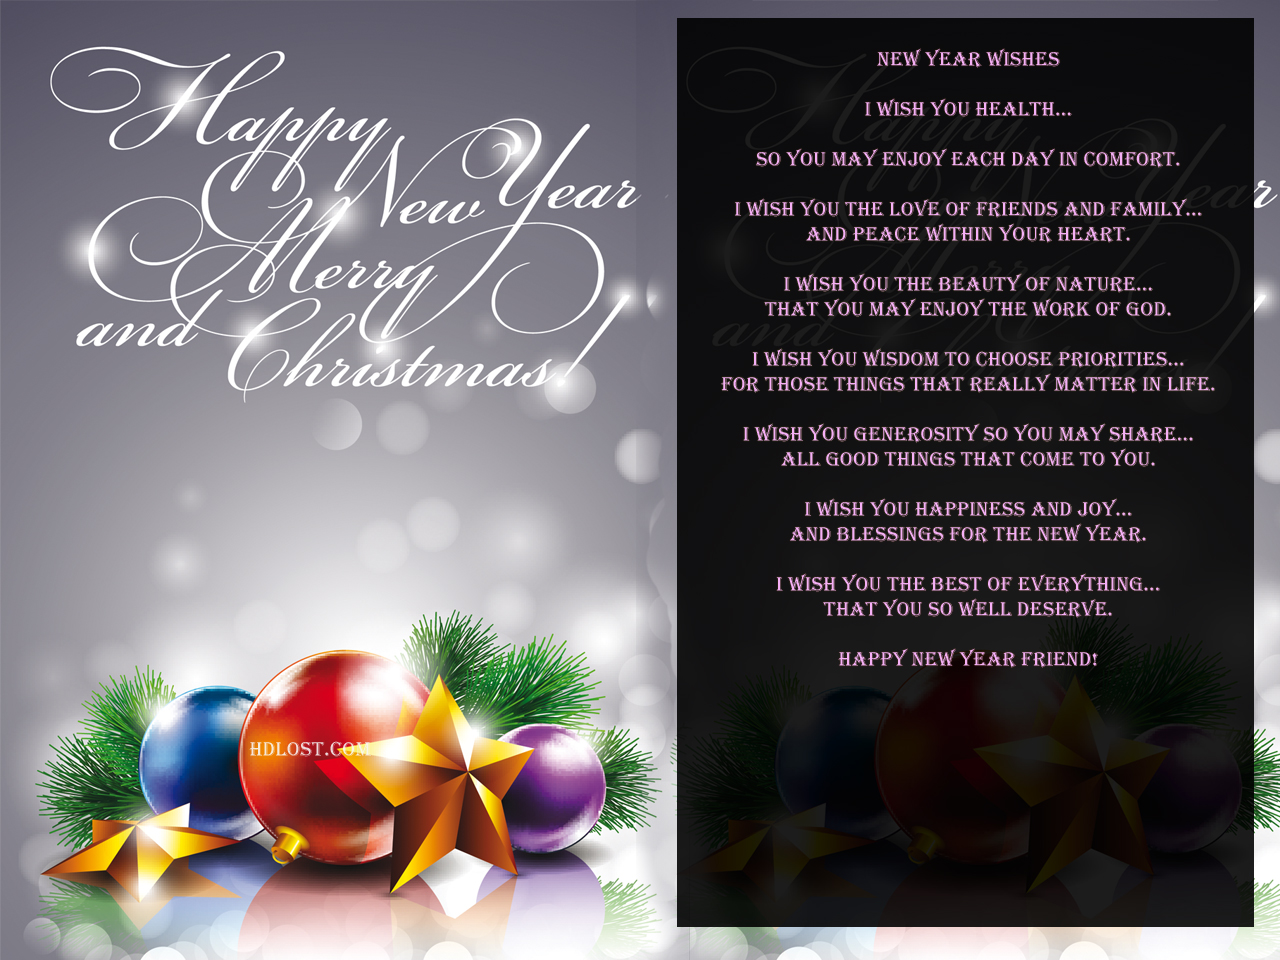 http://3.bp.blogspot.com/-BpZeUYTyQKI/Tv5BRJoe_nI/AAAAAAAAApo/oomzXC5uyo4/s1600/wallpaper+with+Best-wishes-New-Year-and-Christmas.jpg